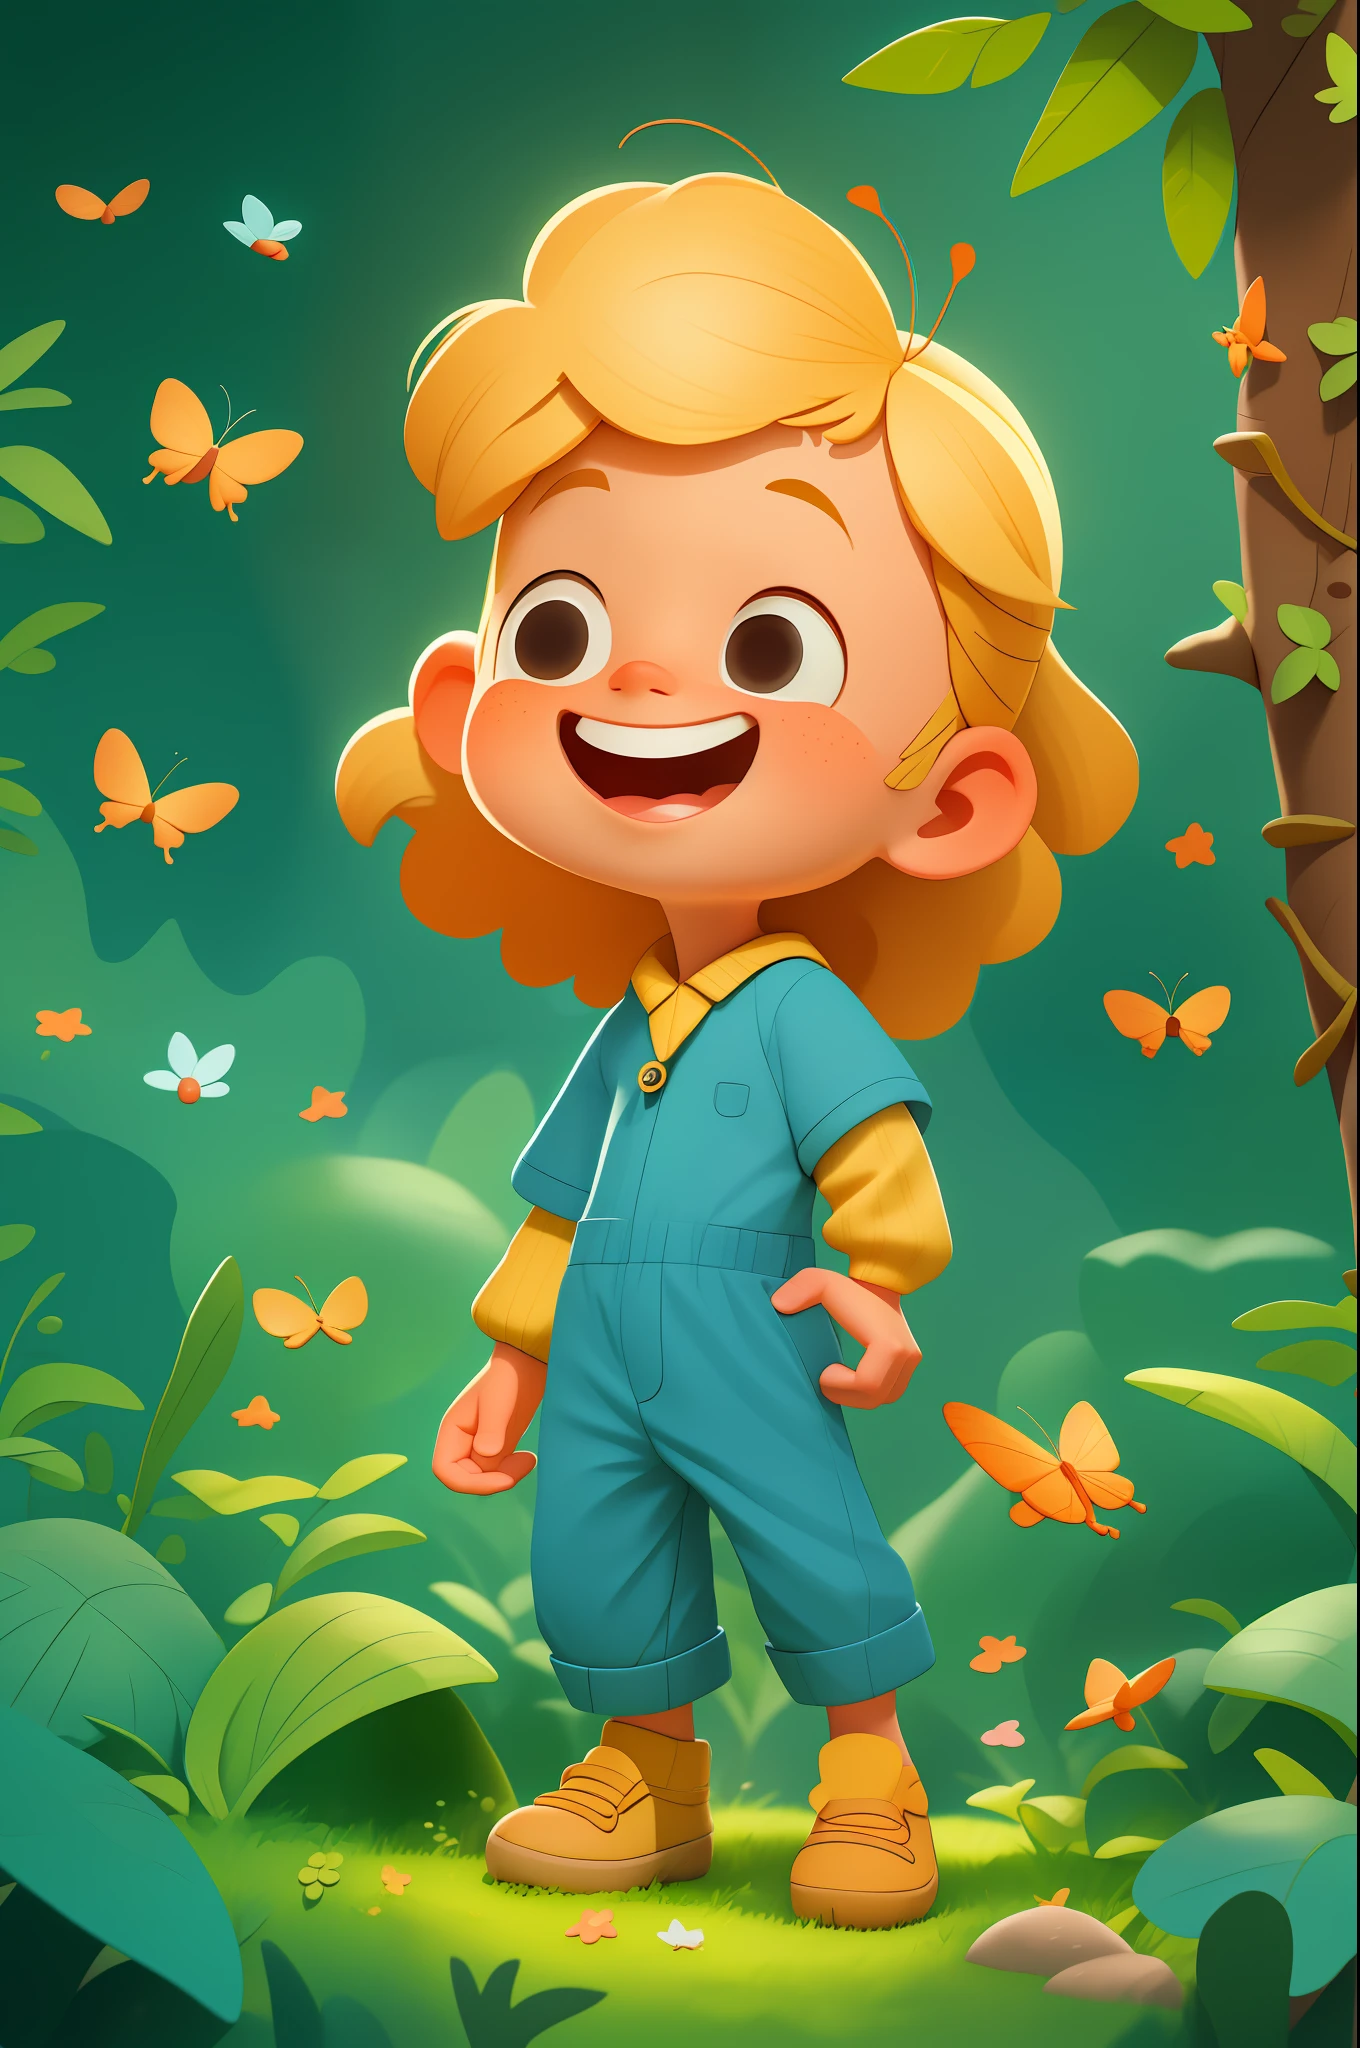 a happy cute 孩子, 肖像, 金髮, 穿著藍色太空服裝, 和蝴蝶玩耍, 戶外, 背景森林, 孩子, 語氣, 皮克斯風格, 3D, car語氣, 詳細的臉, 不對稱的, 上半身